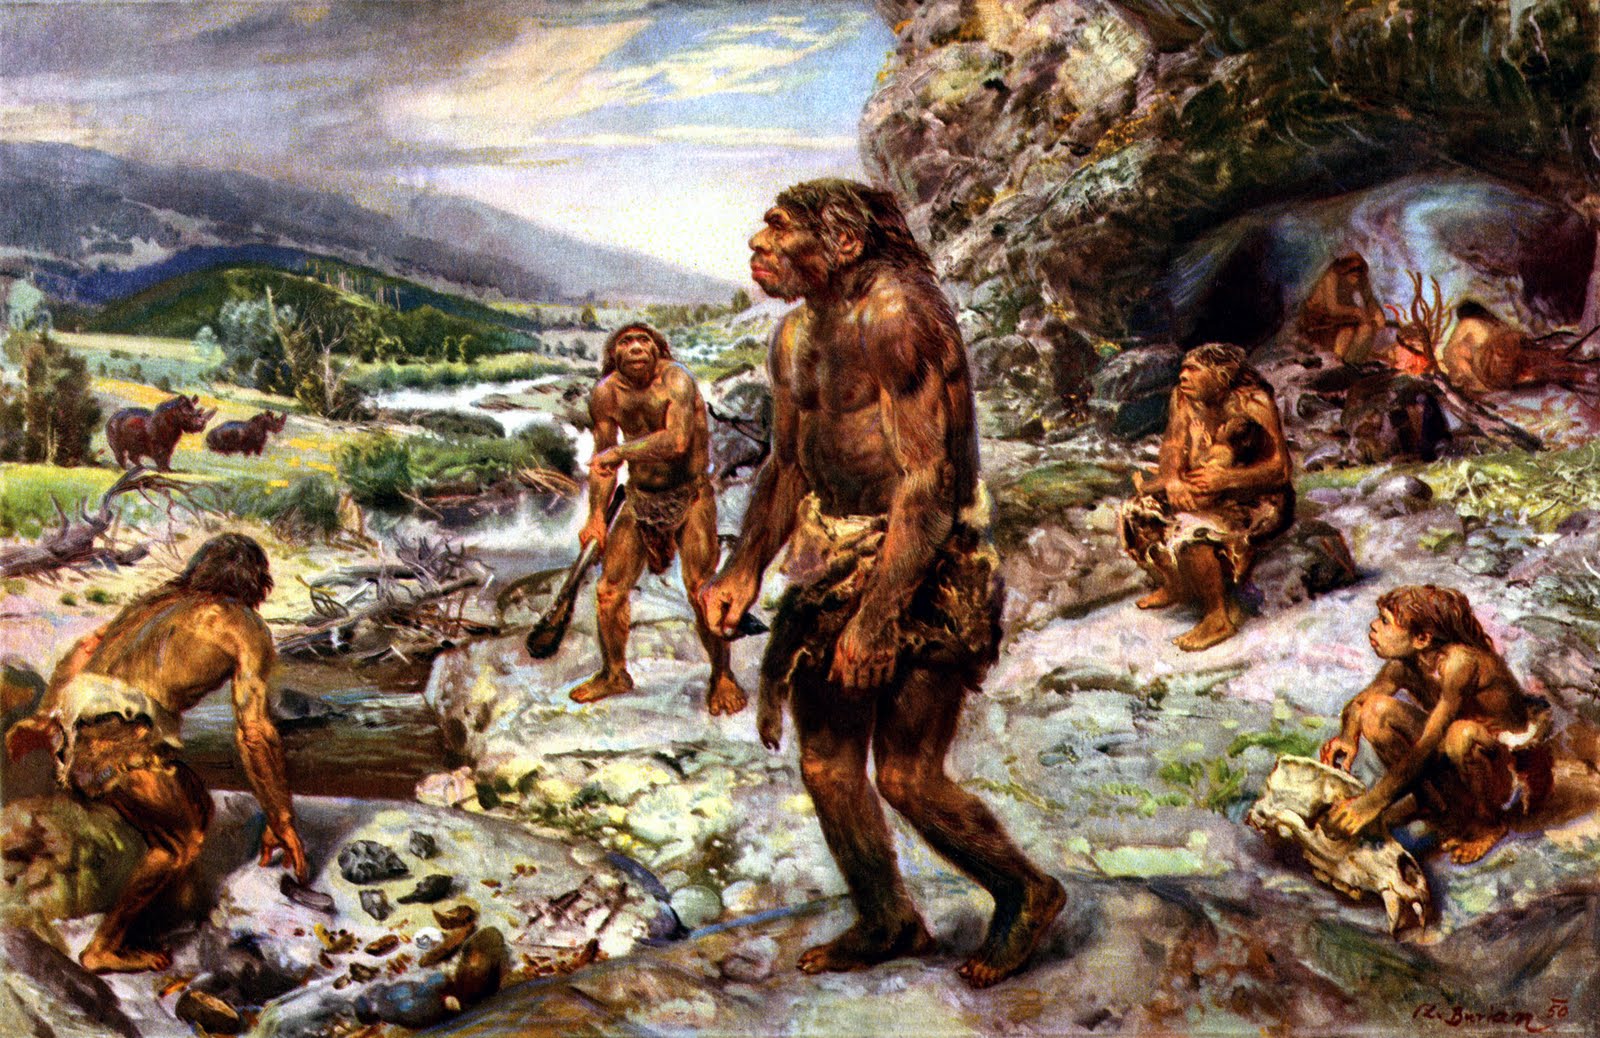 Tabăra de Neanderthali &ndash; Ilustrație de Zdenek Burian